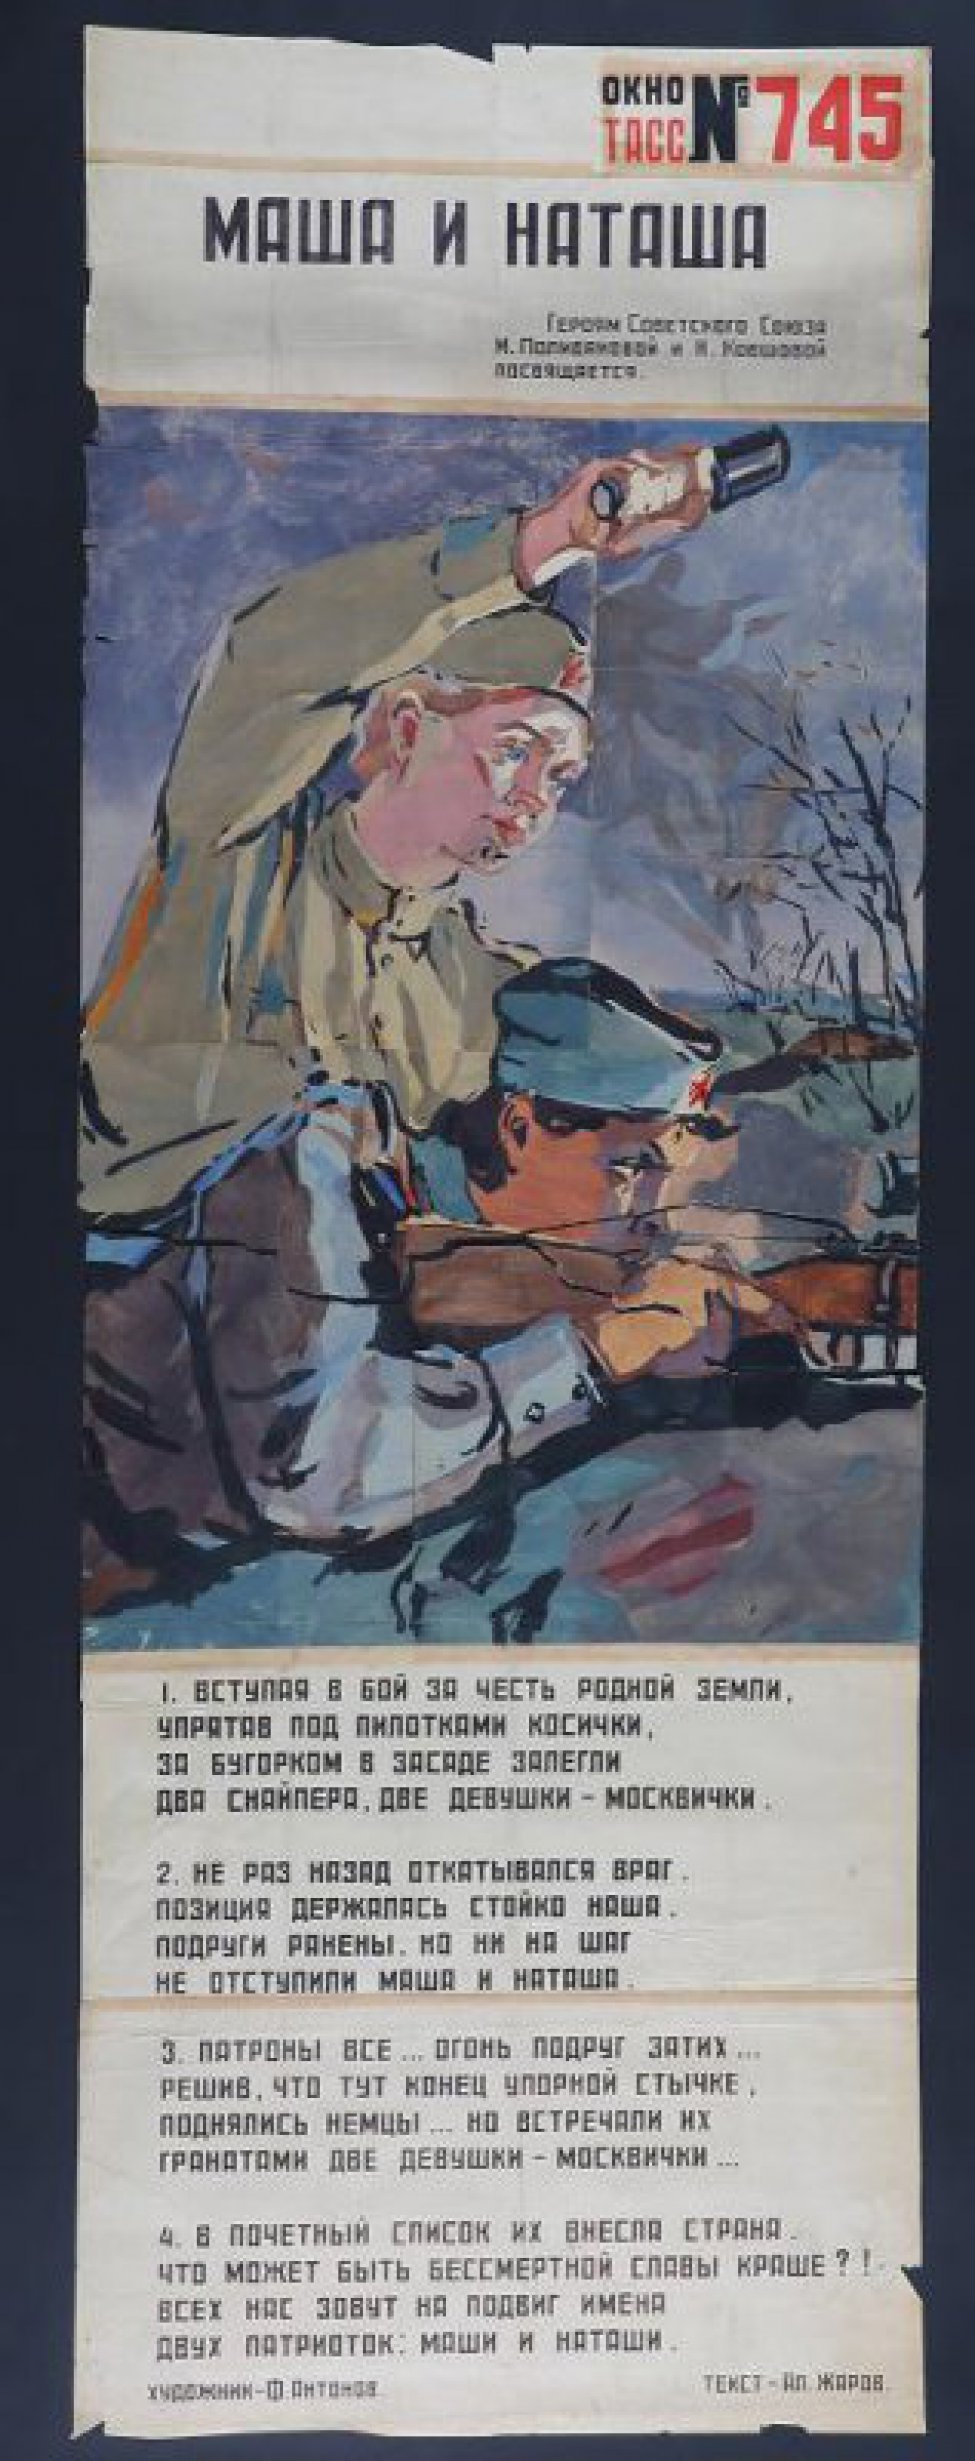 Изображено: две девушки, одна стреляет, другая бросает гранату, текст Ал. Жарова " Вступая в бой за честь родной земли..."